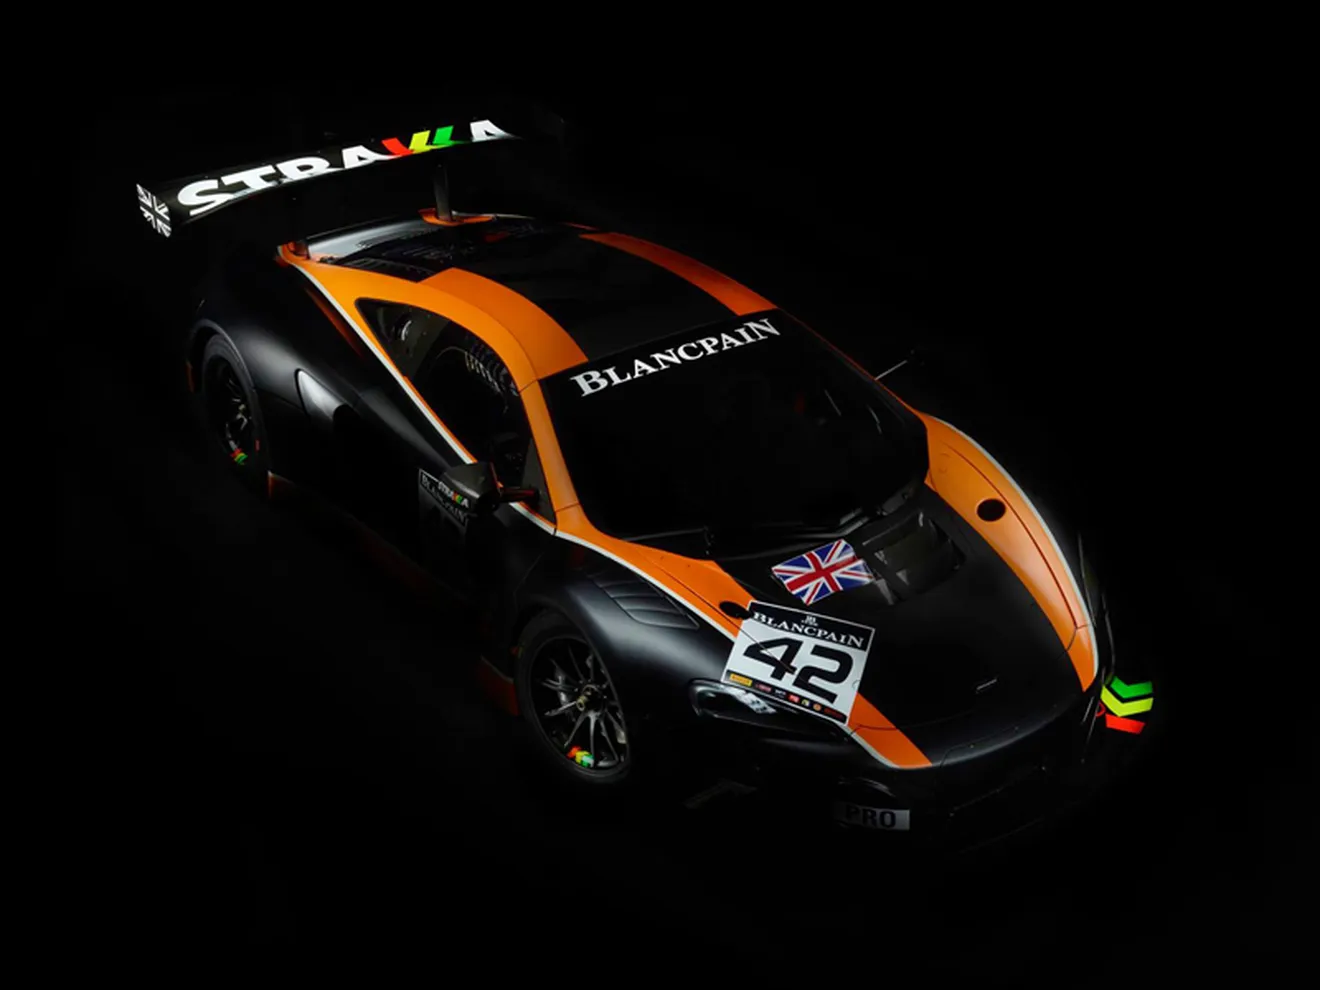 Strakka anuncia los pilotos de sus cuatro McLaren 650S GT3